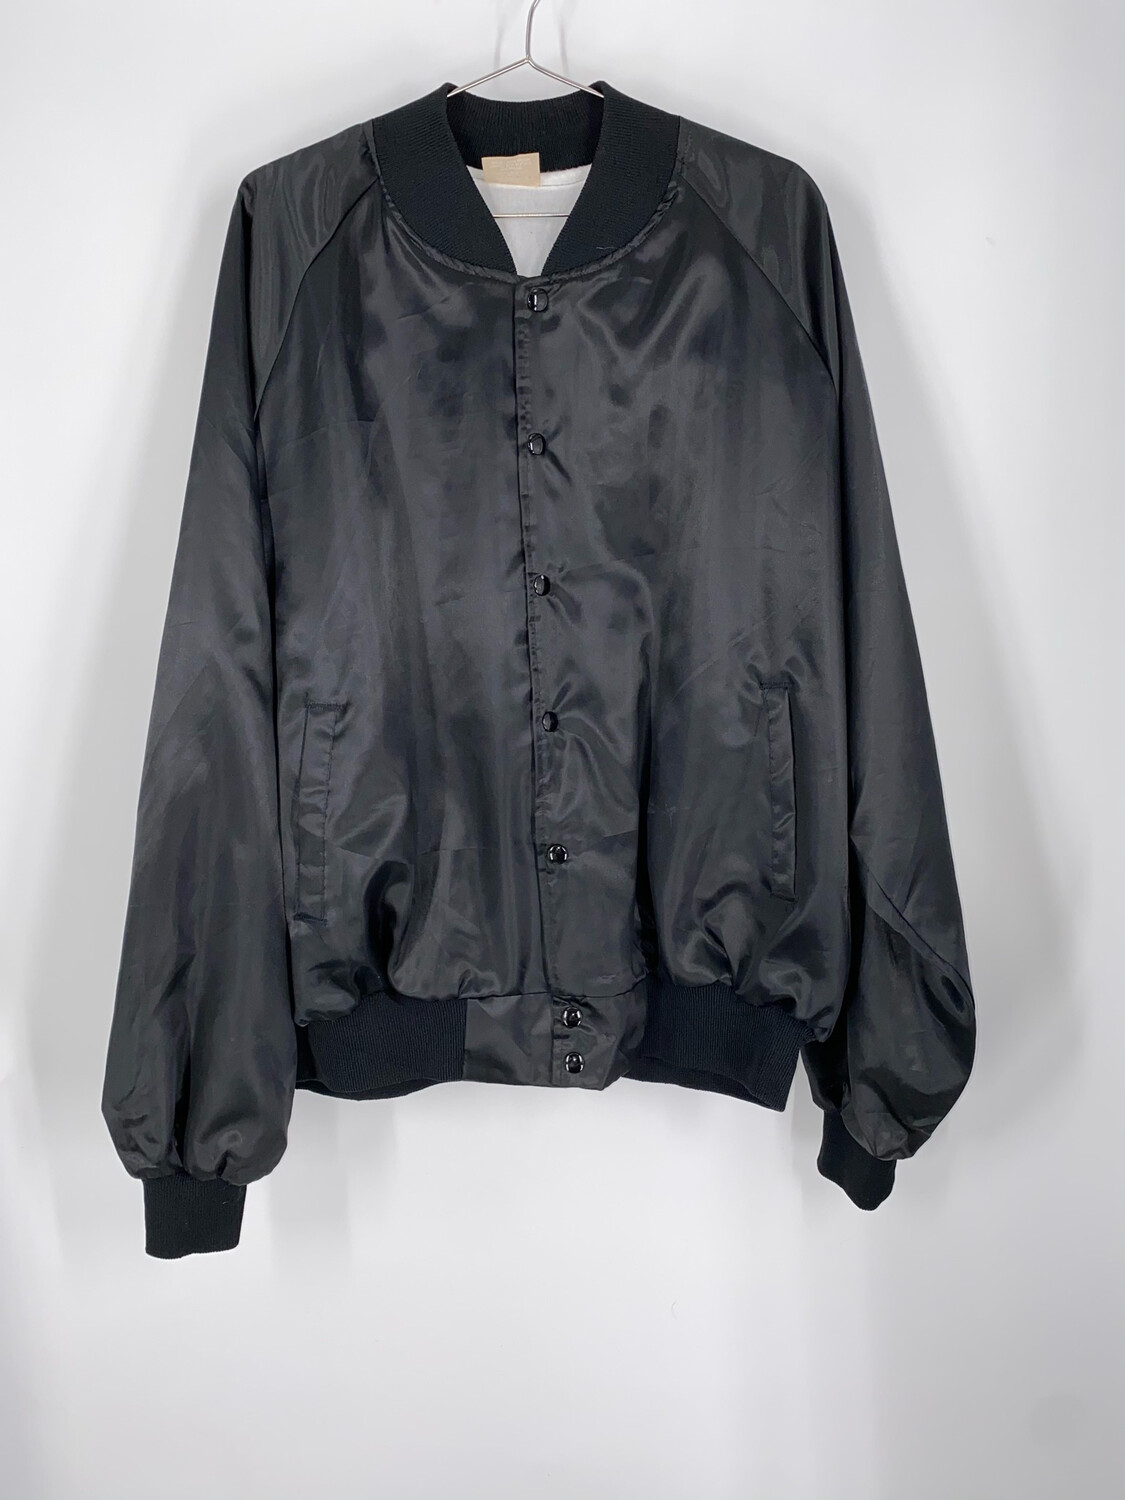 Auburn Sportswear Bomber Jacket Size XXL